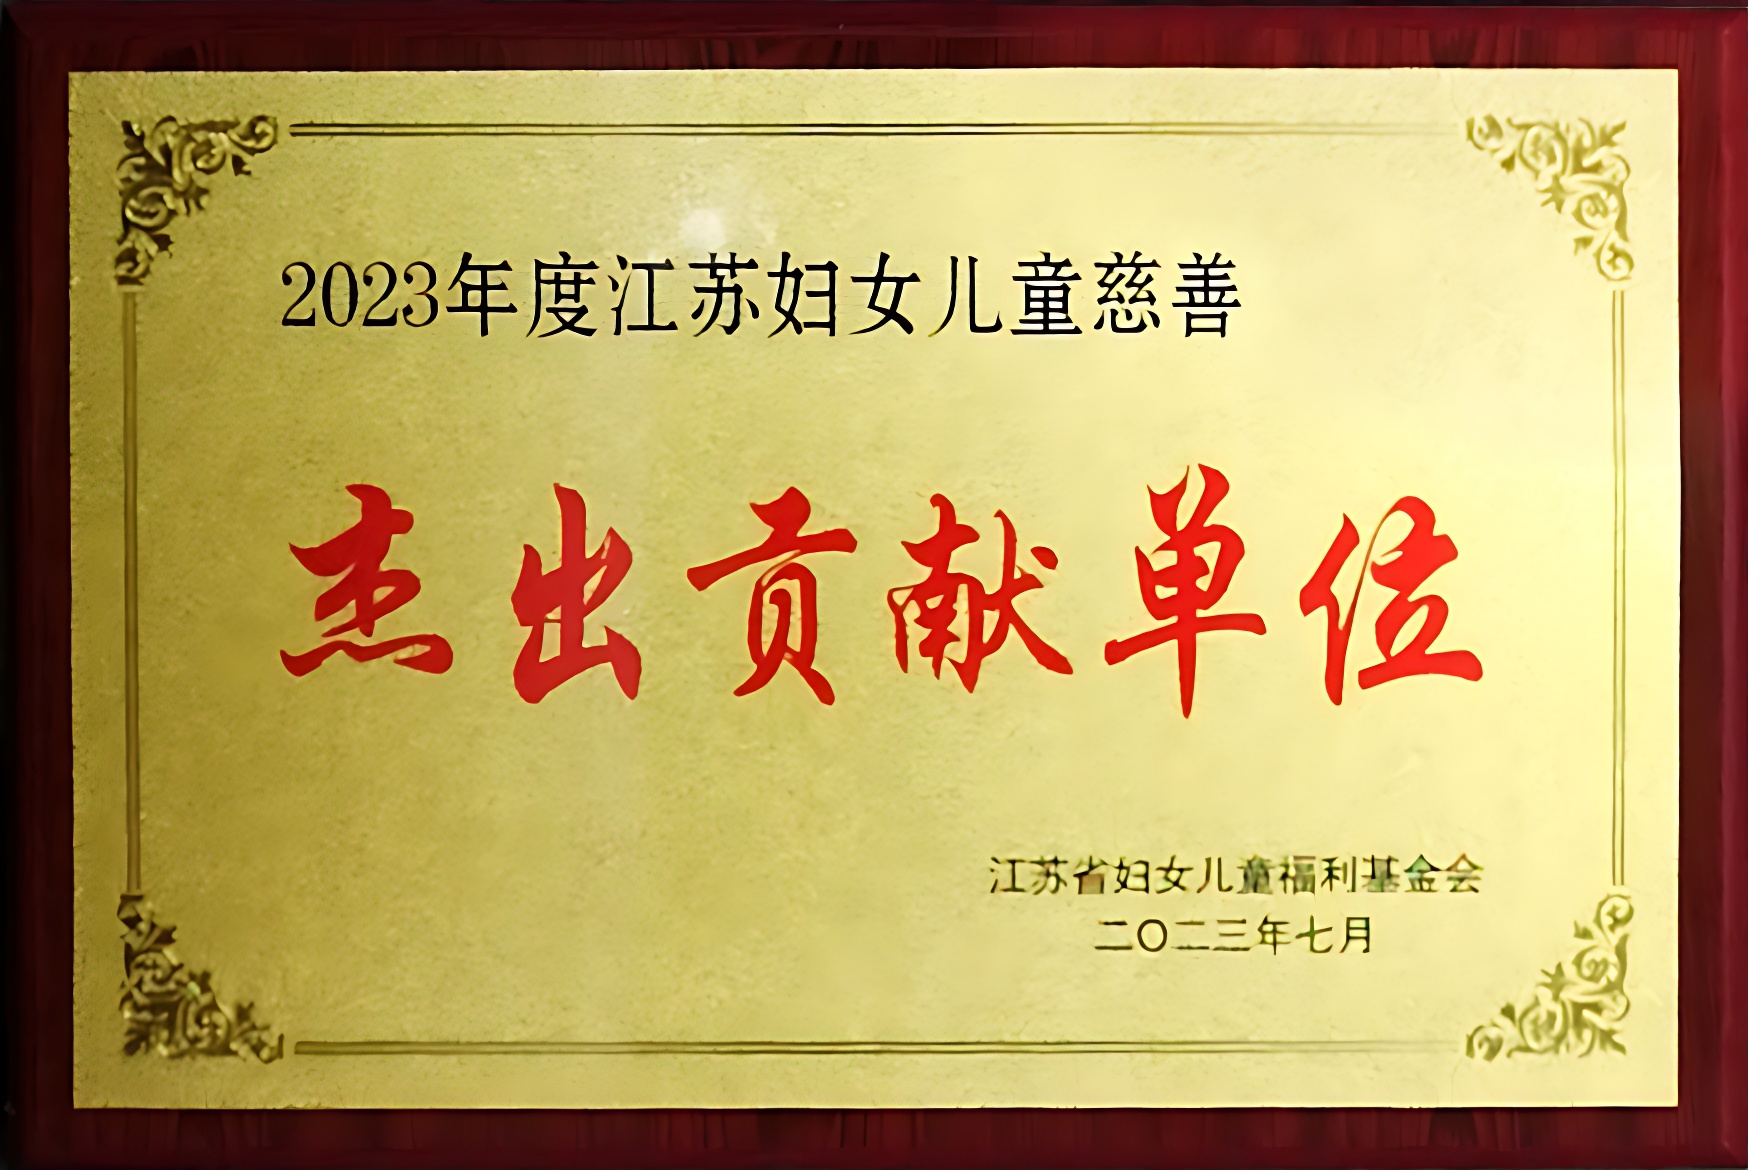 2023年度江苏妇女儿童慈善杰出贡献单位